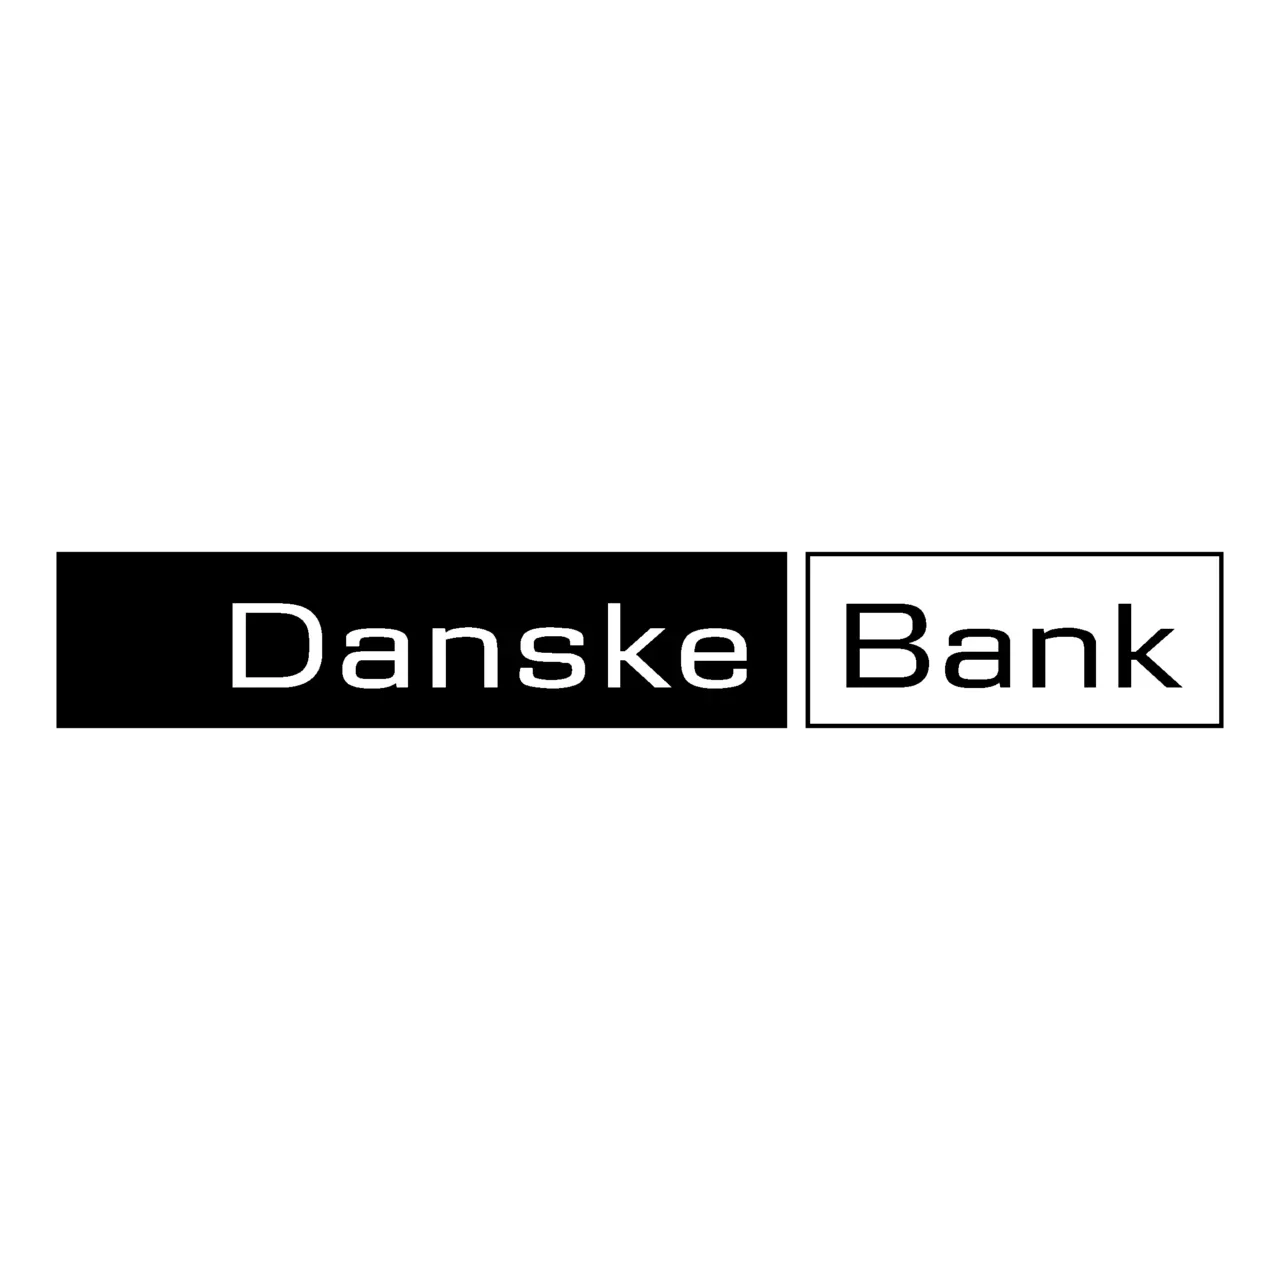 danske-bank-logo-black-and-white.png